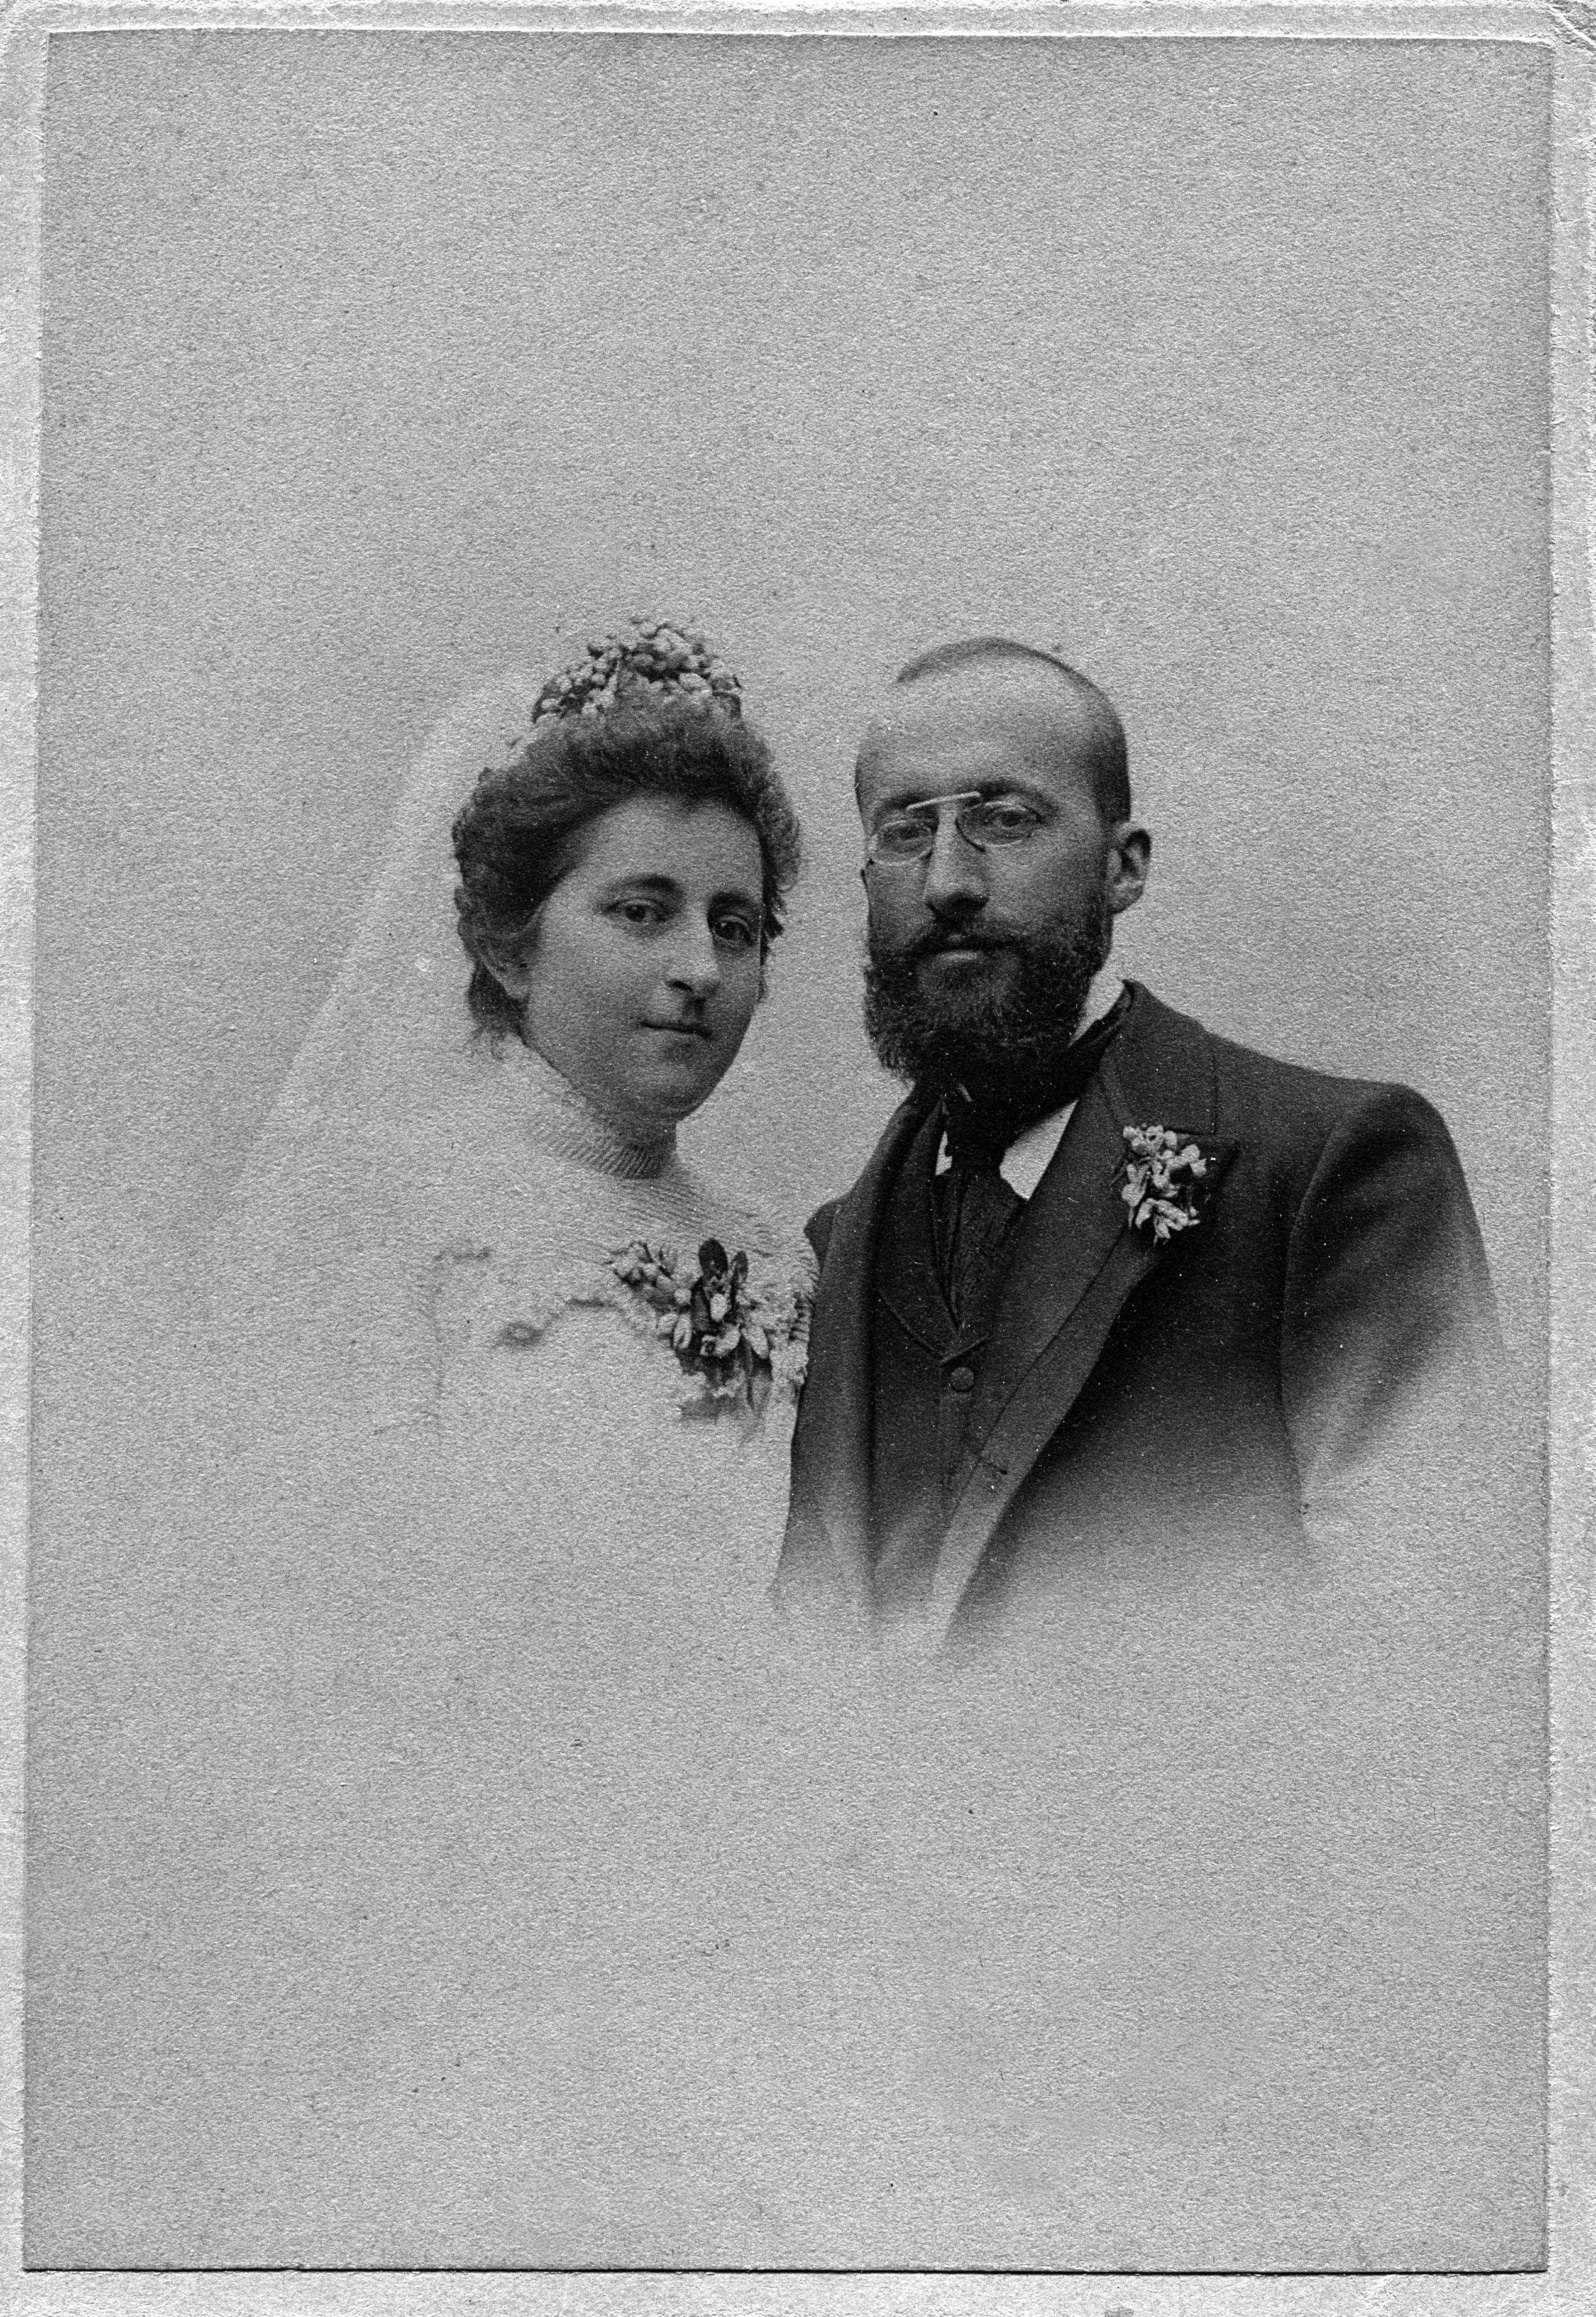 Fotografía de la boda de María Goyri. Fundación Ramón Menéndez Pidal.